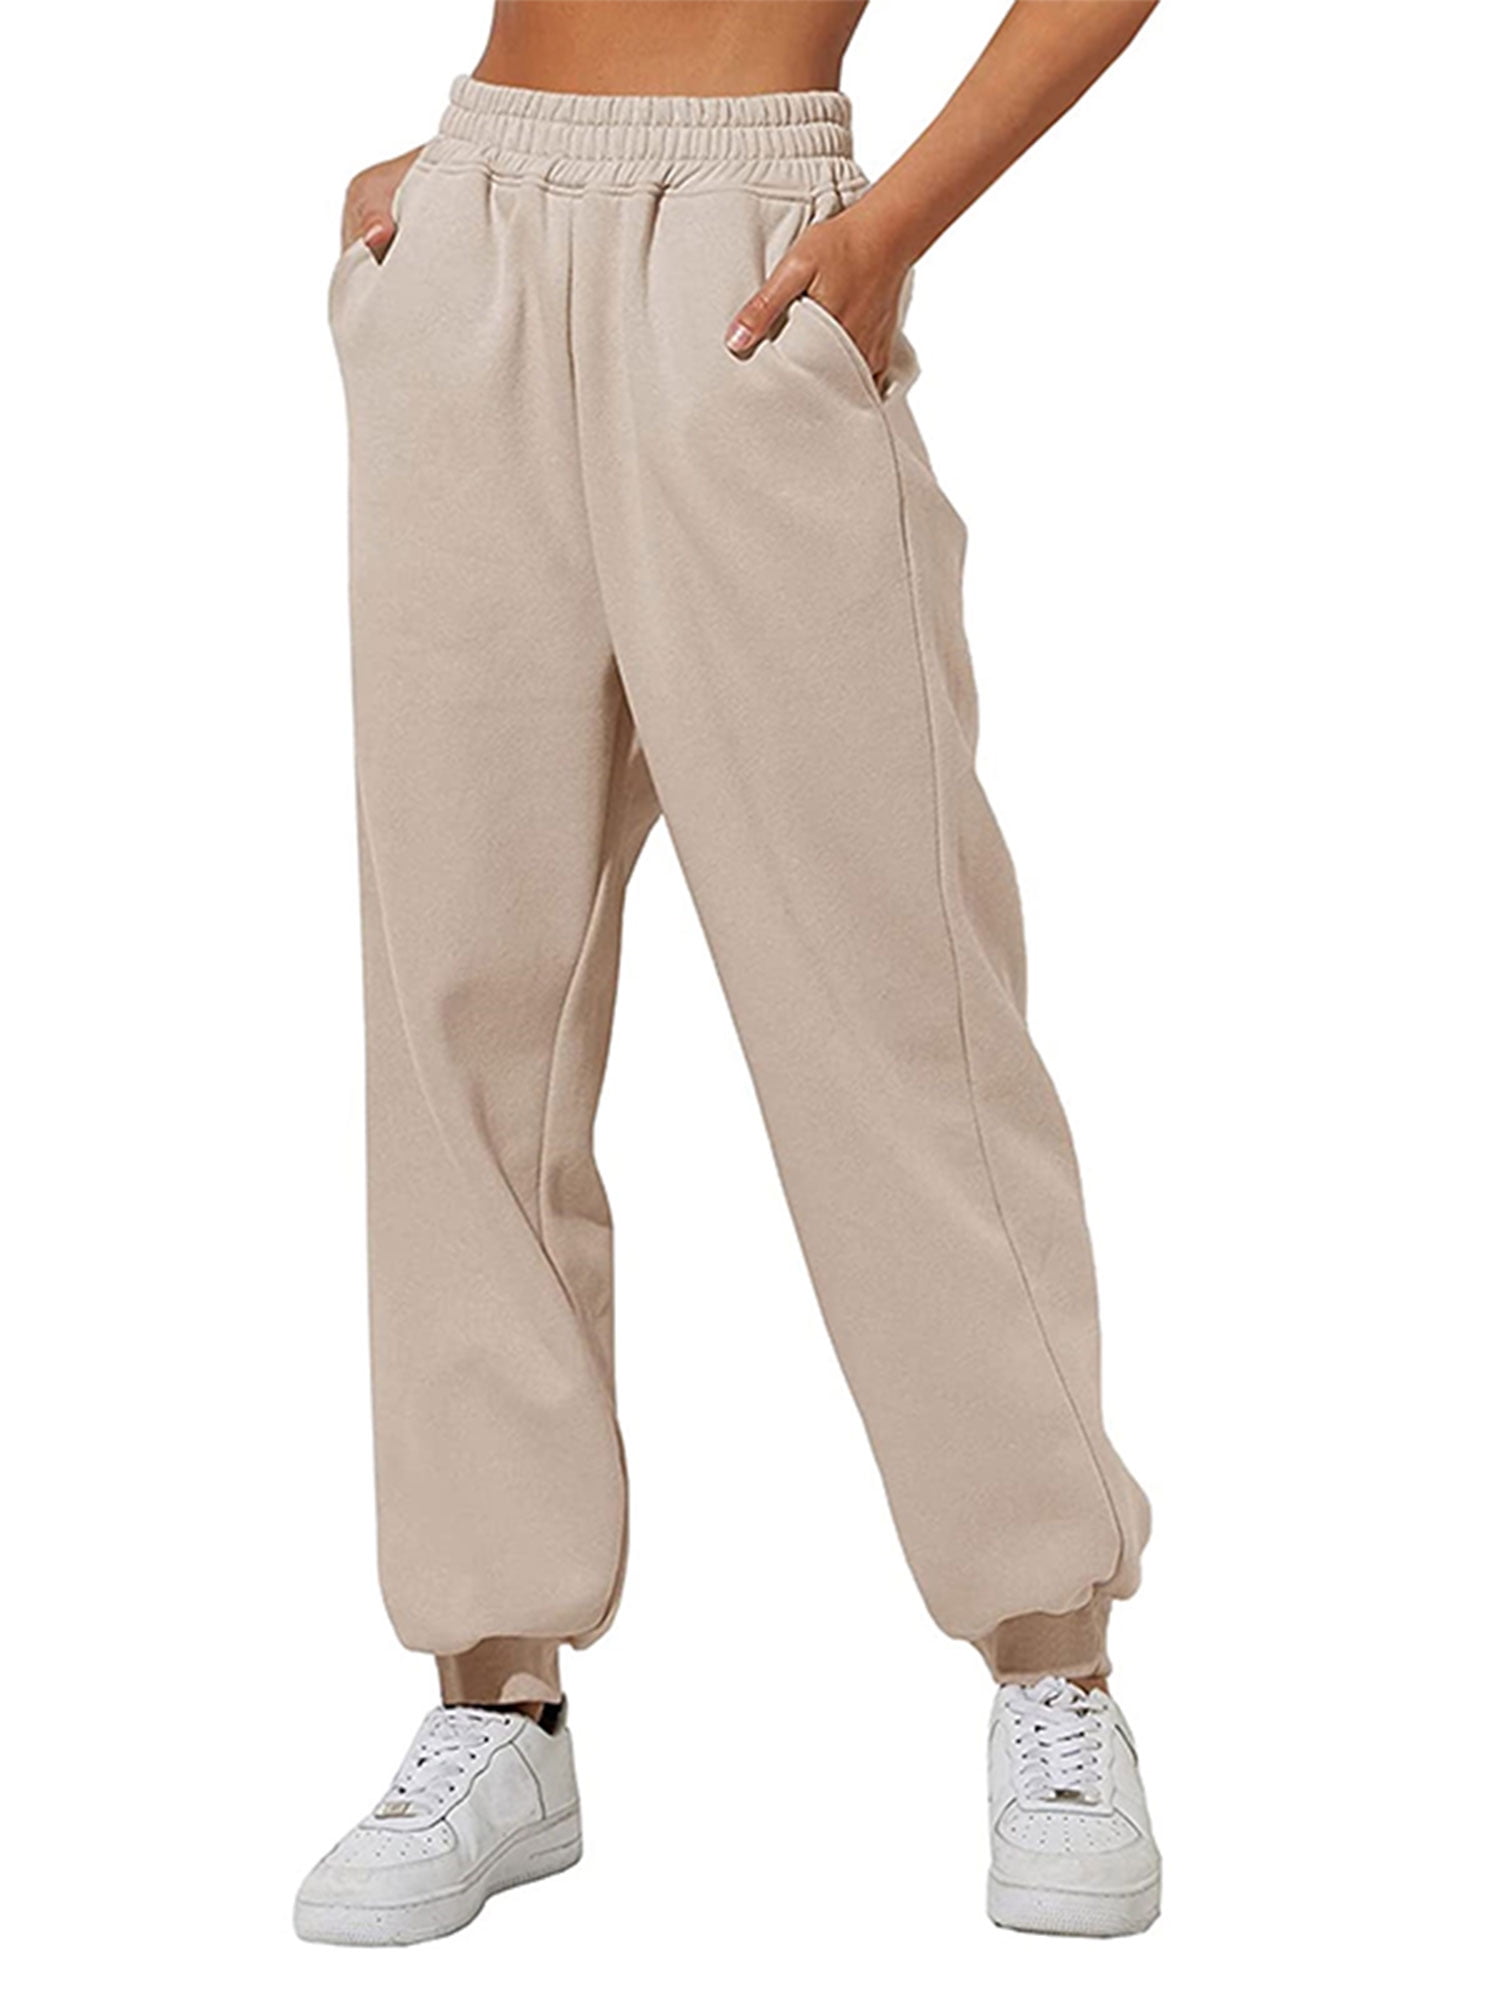 Eddie Bauer Women's Fleece Lined Pull On Travel Pants | eBay